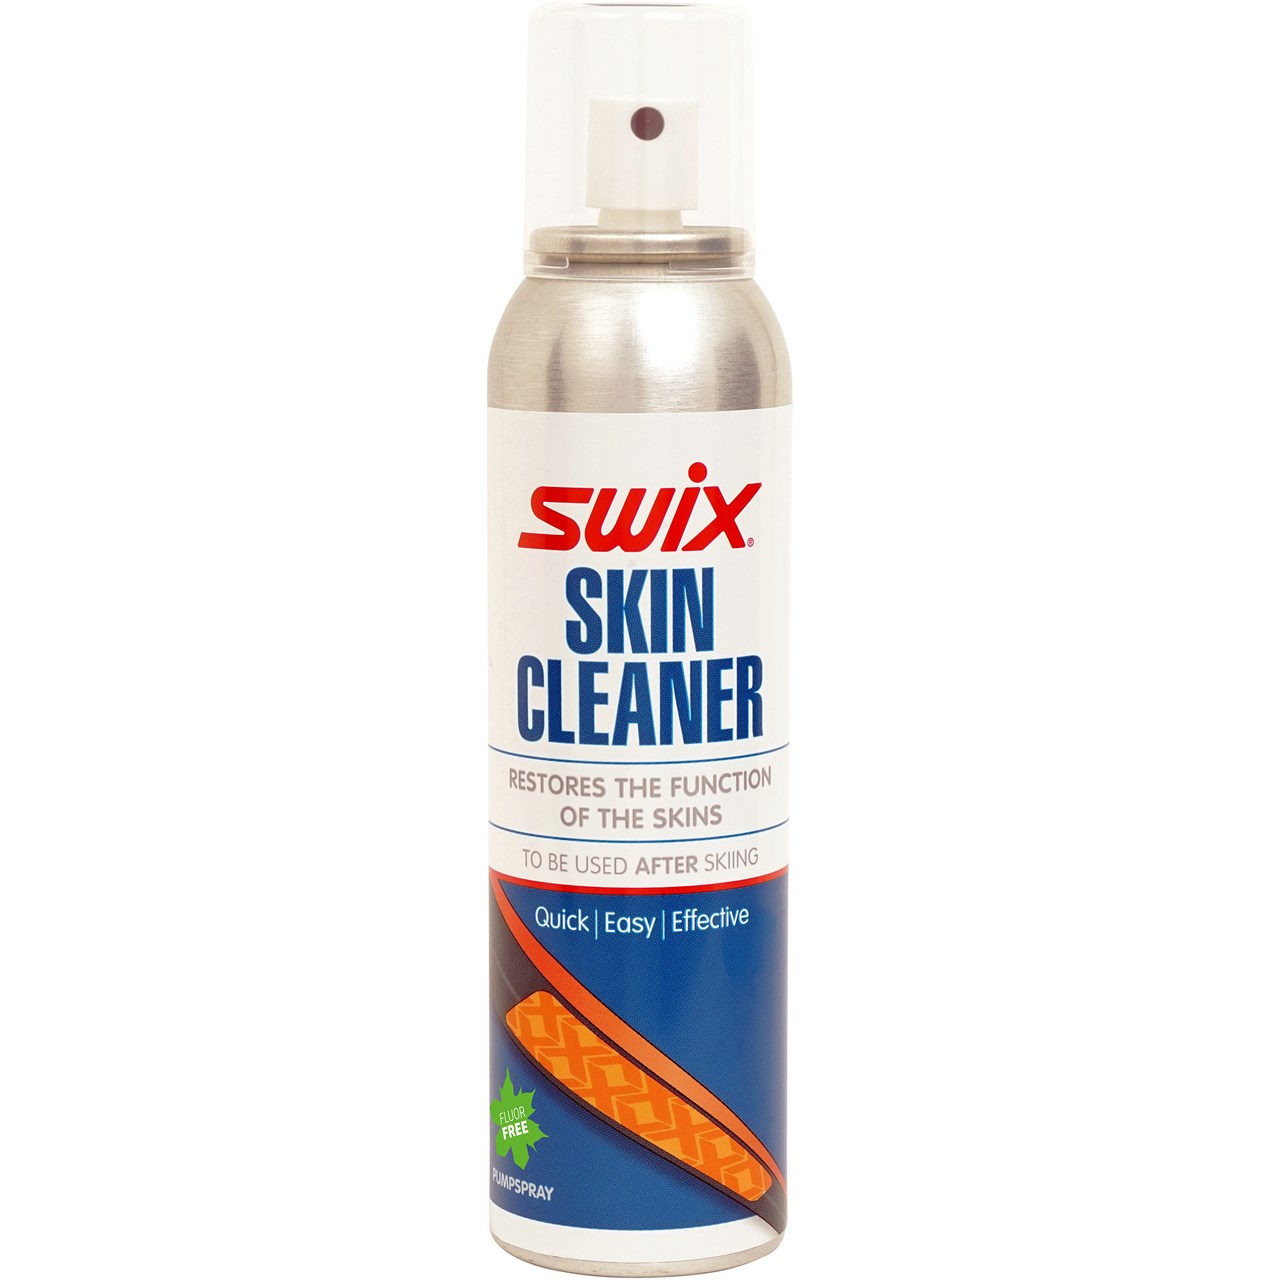 Skin cleaner spray